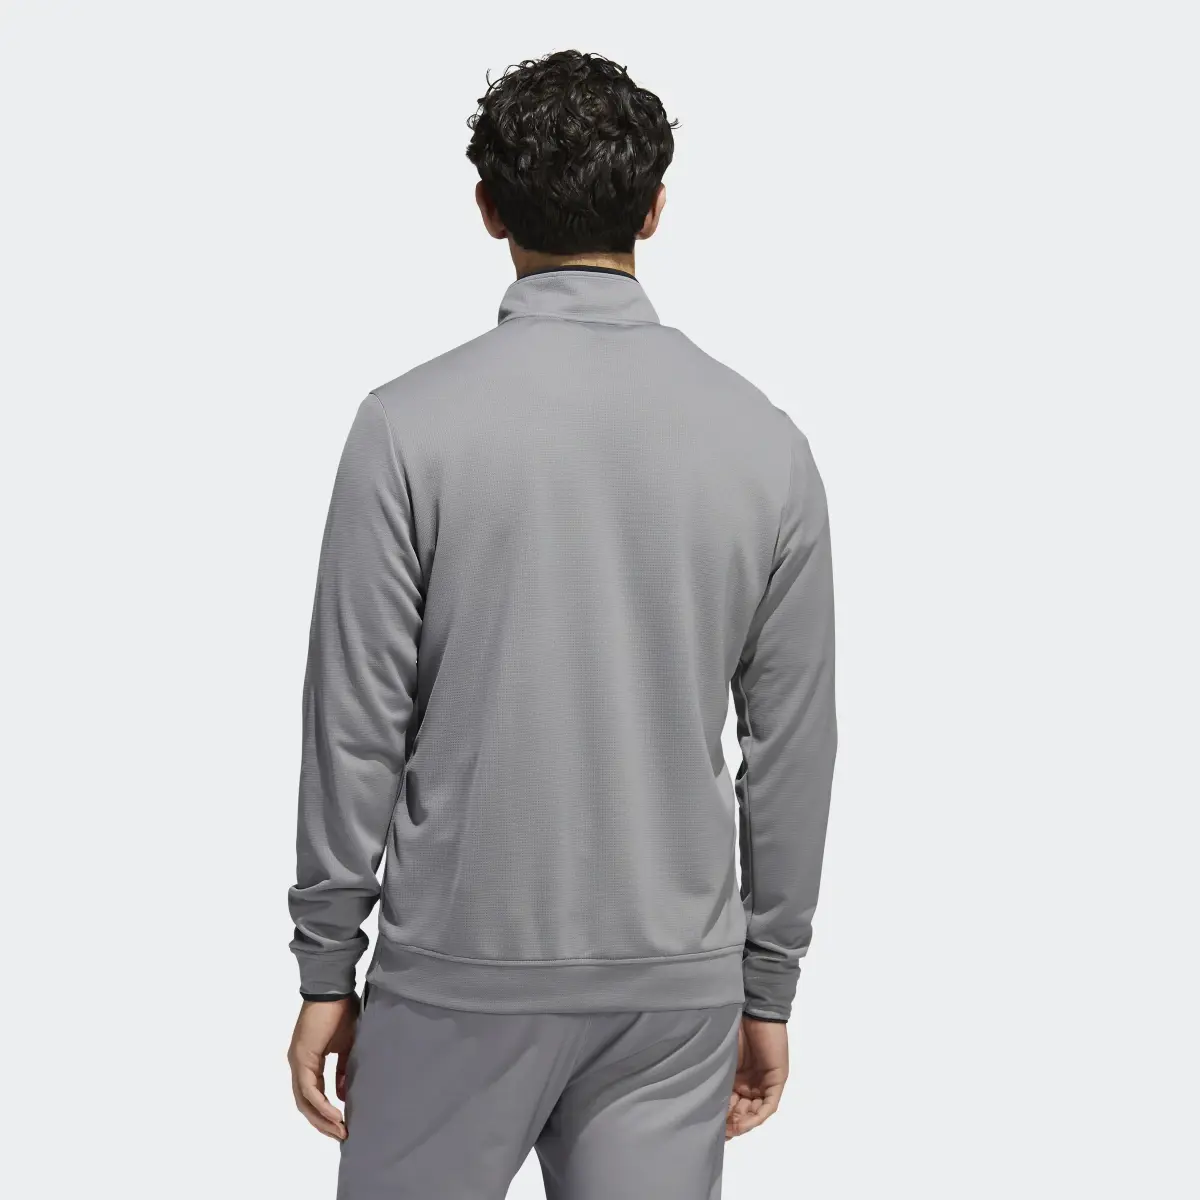 Adidas Quarter-Zip Pullover. 3